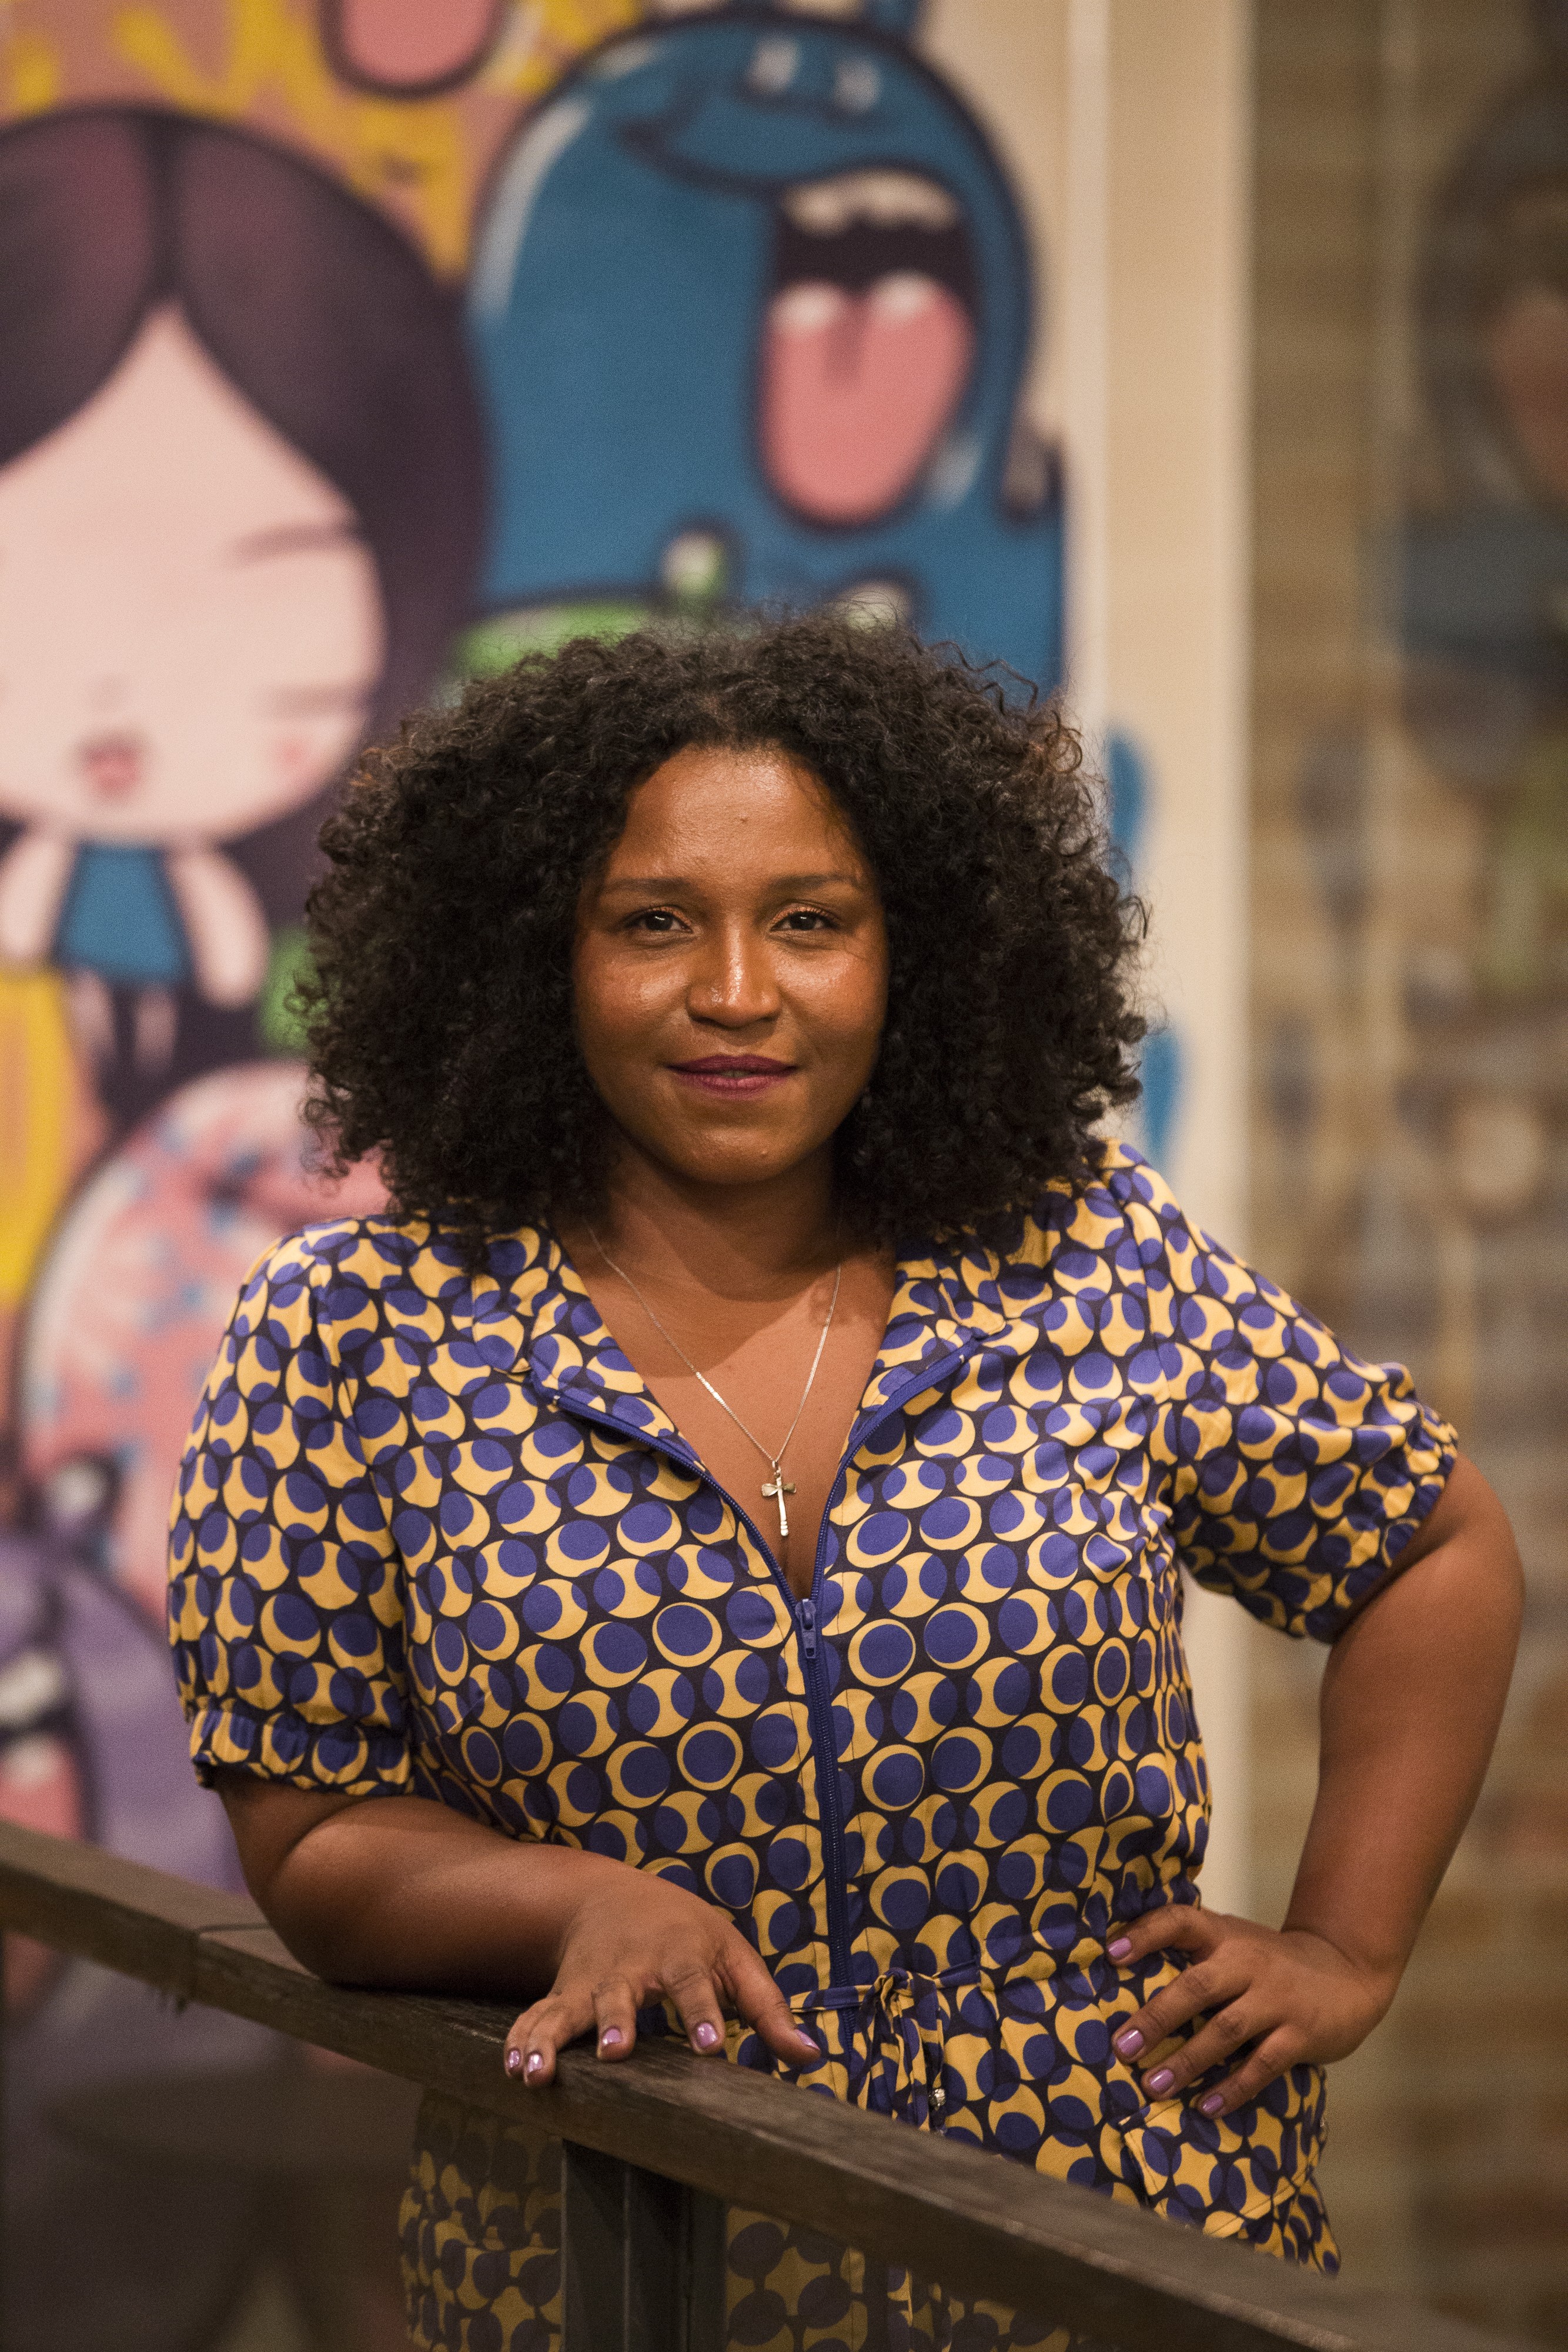 Mulheres Negras Pautando o Futuro. PretaLab/Olabi Makerspace. Rio de Janeiro, 29 de agosto de 2019. Foto: Valda Nogueira (Foto: Valda Nogueira)